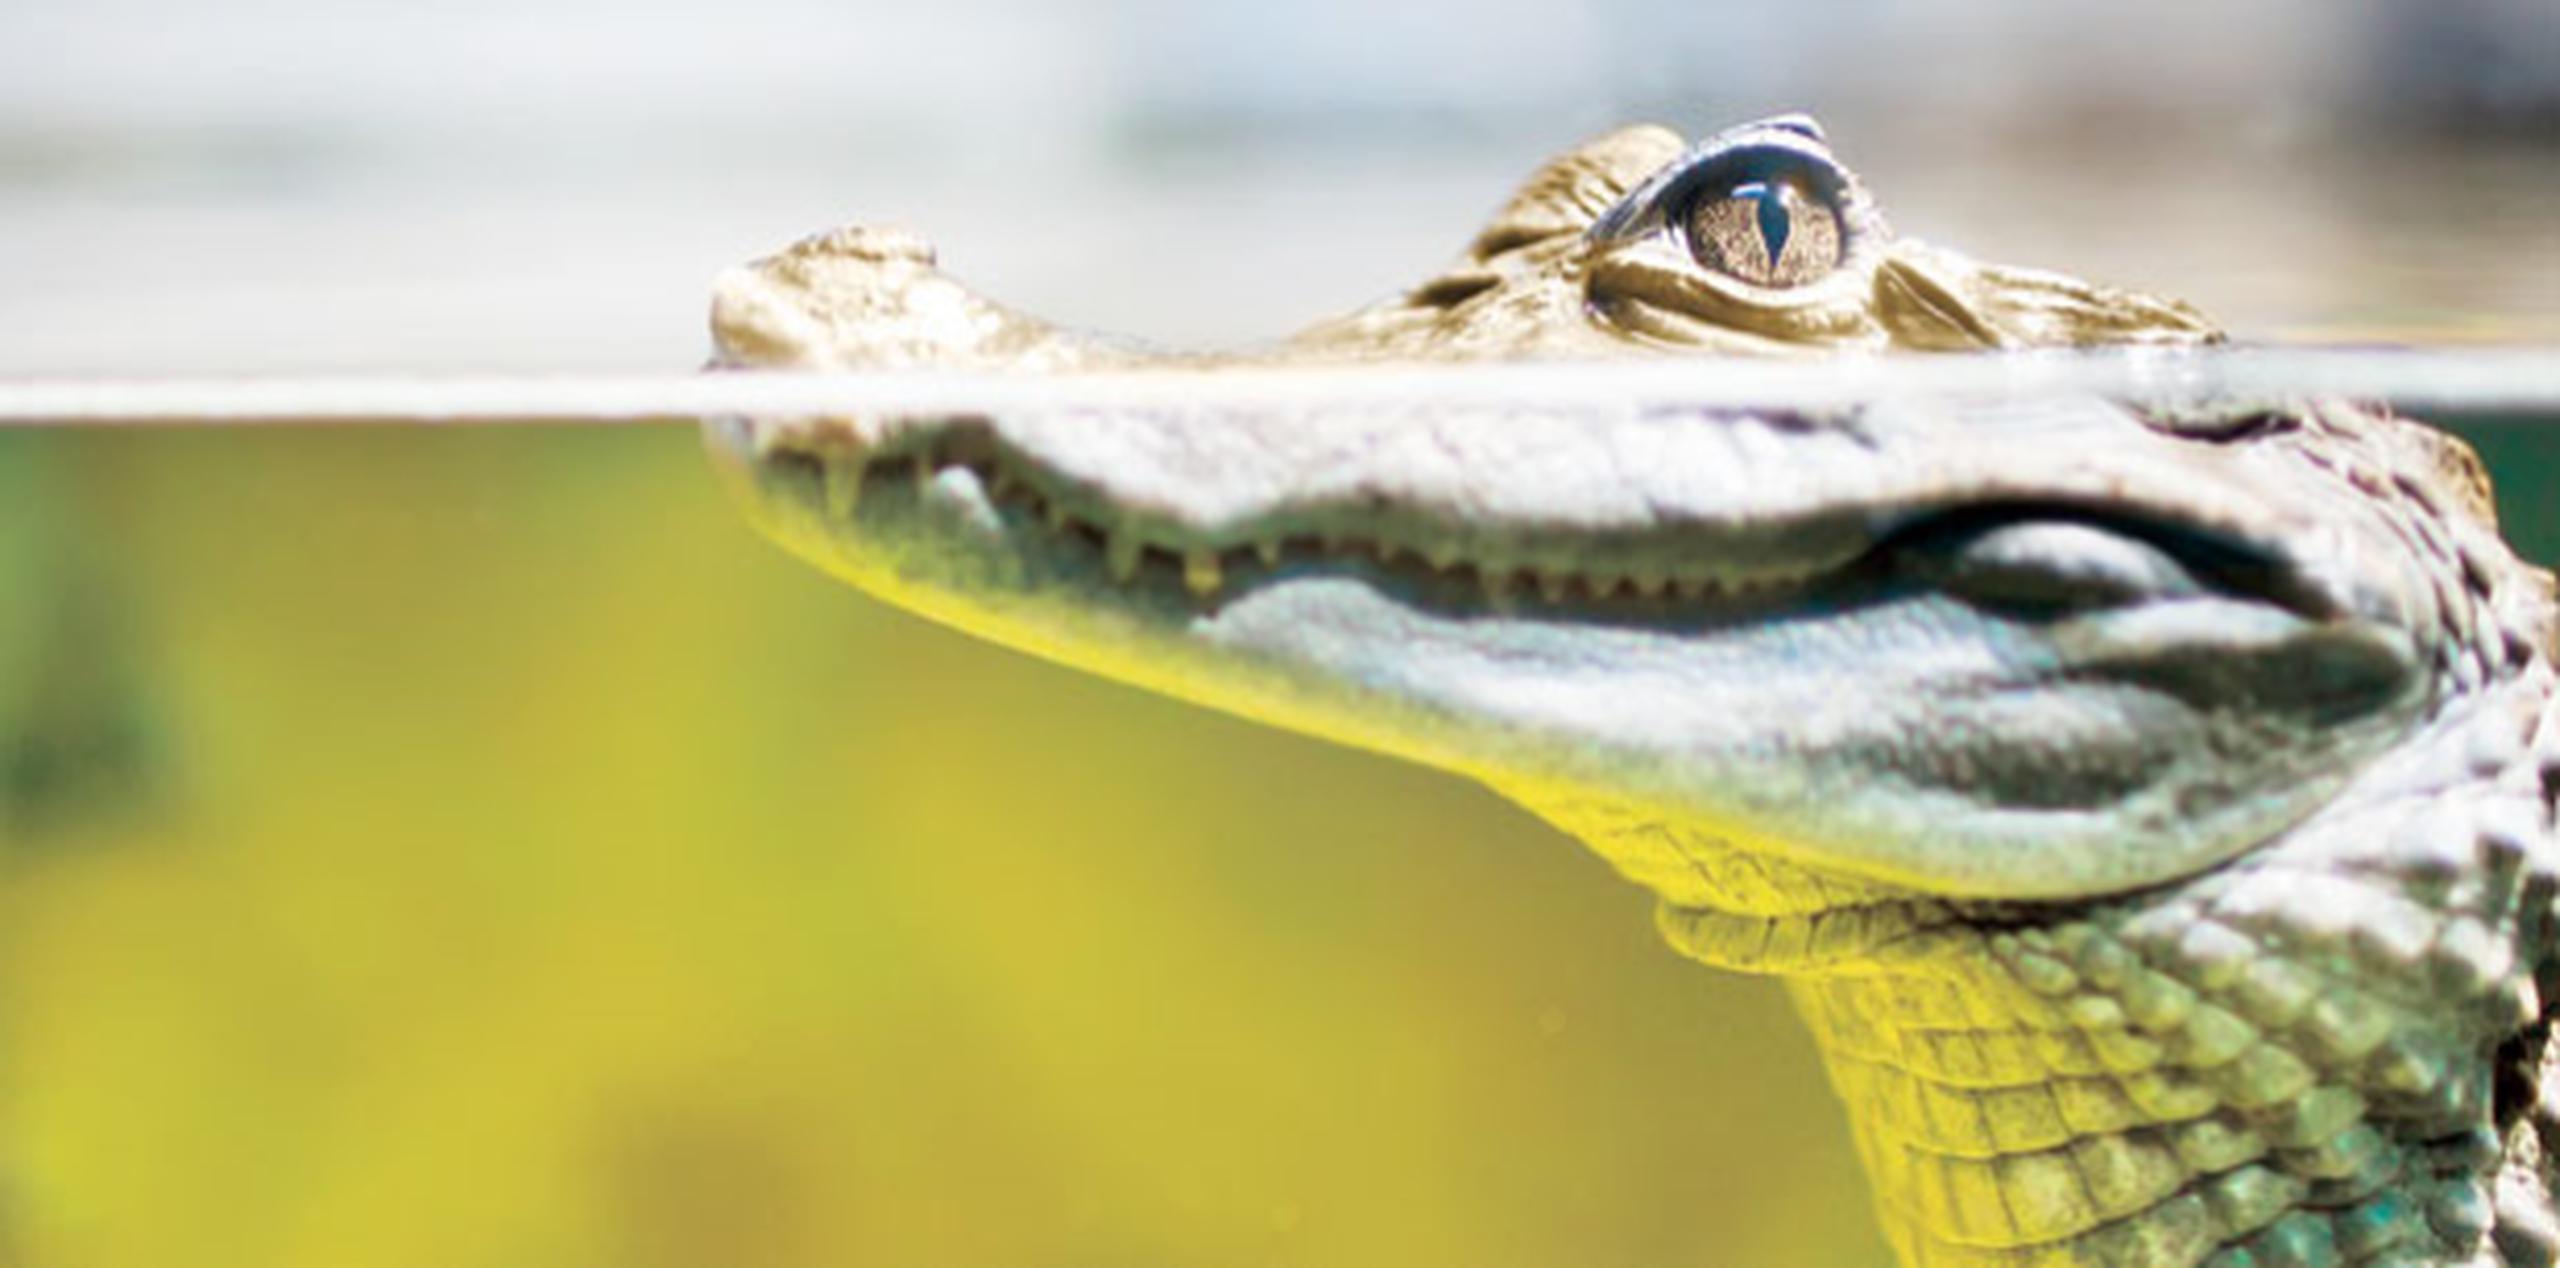 La población de caimanes de Florida se mantiene estable y se calcula en 1.3 millones de animales. (Archivo)